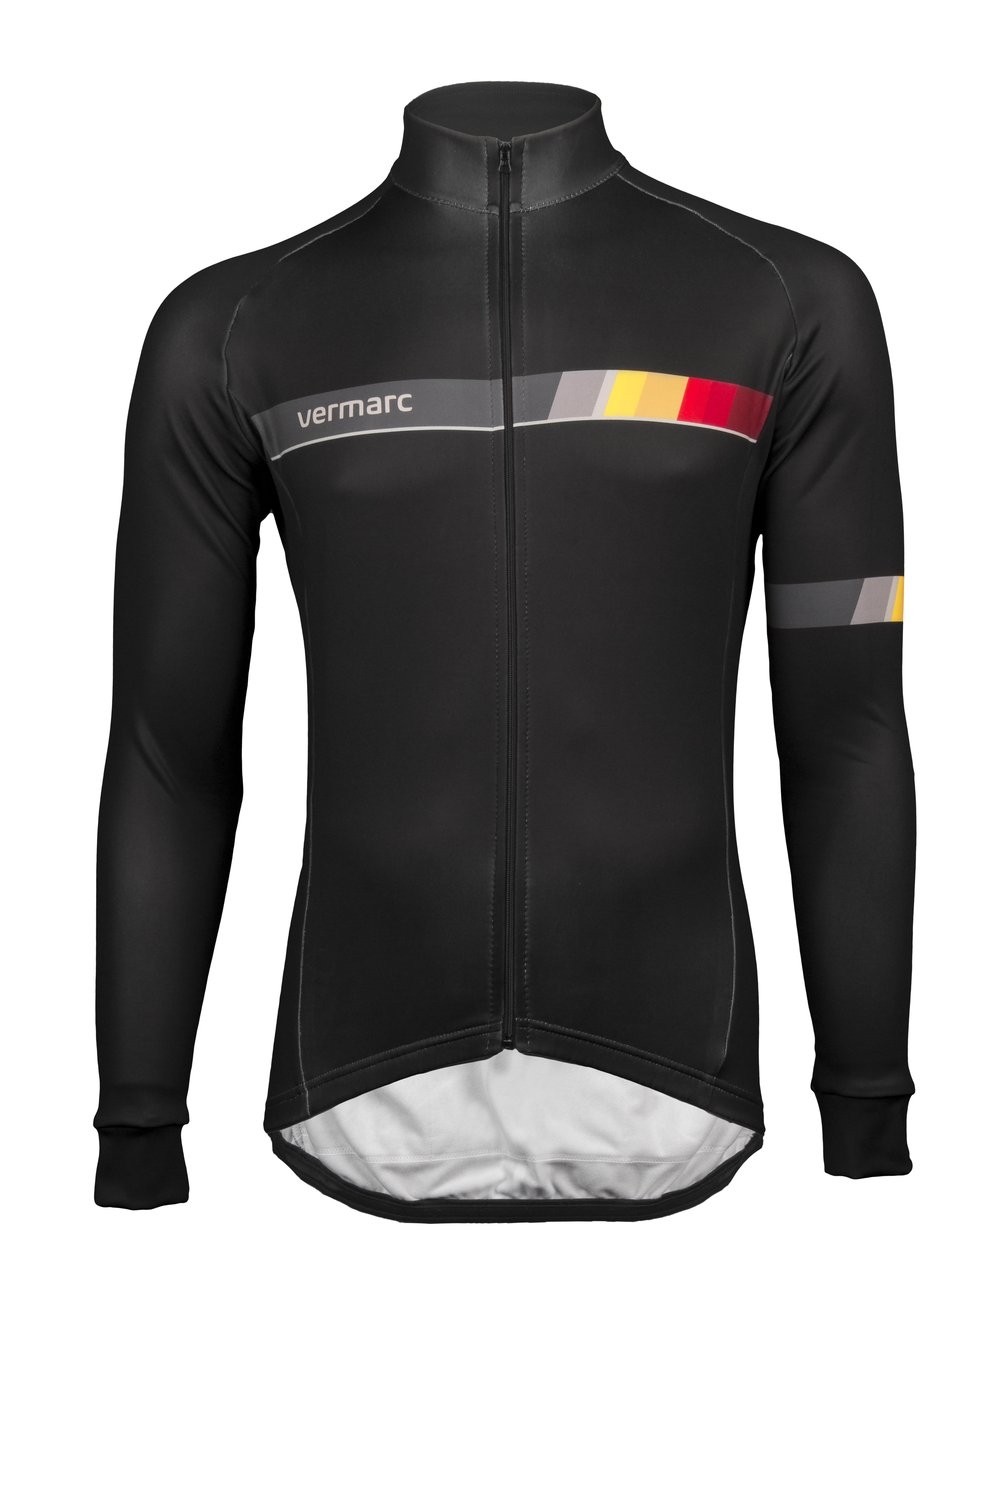 Vermarc belgica mid season veste de cyclisme noir